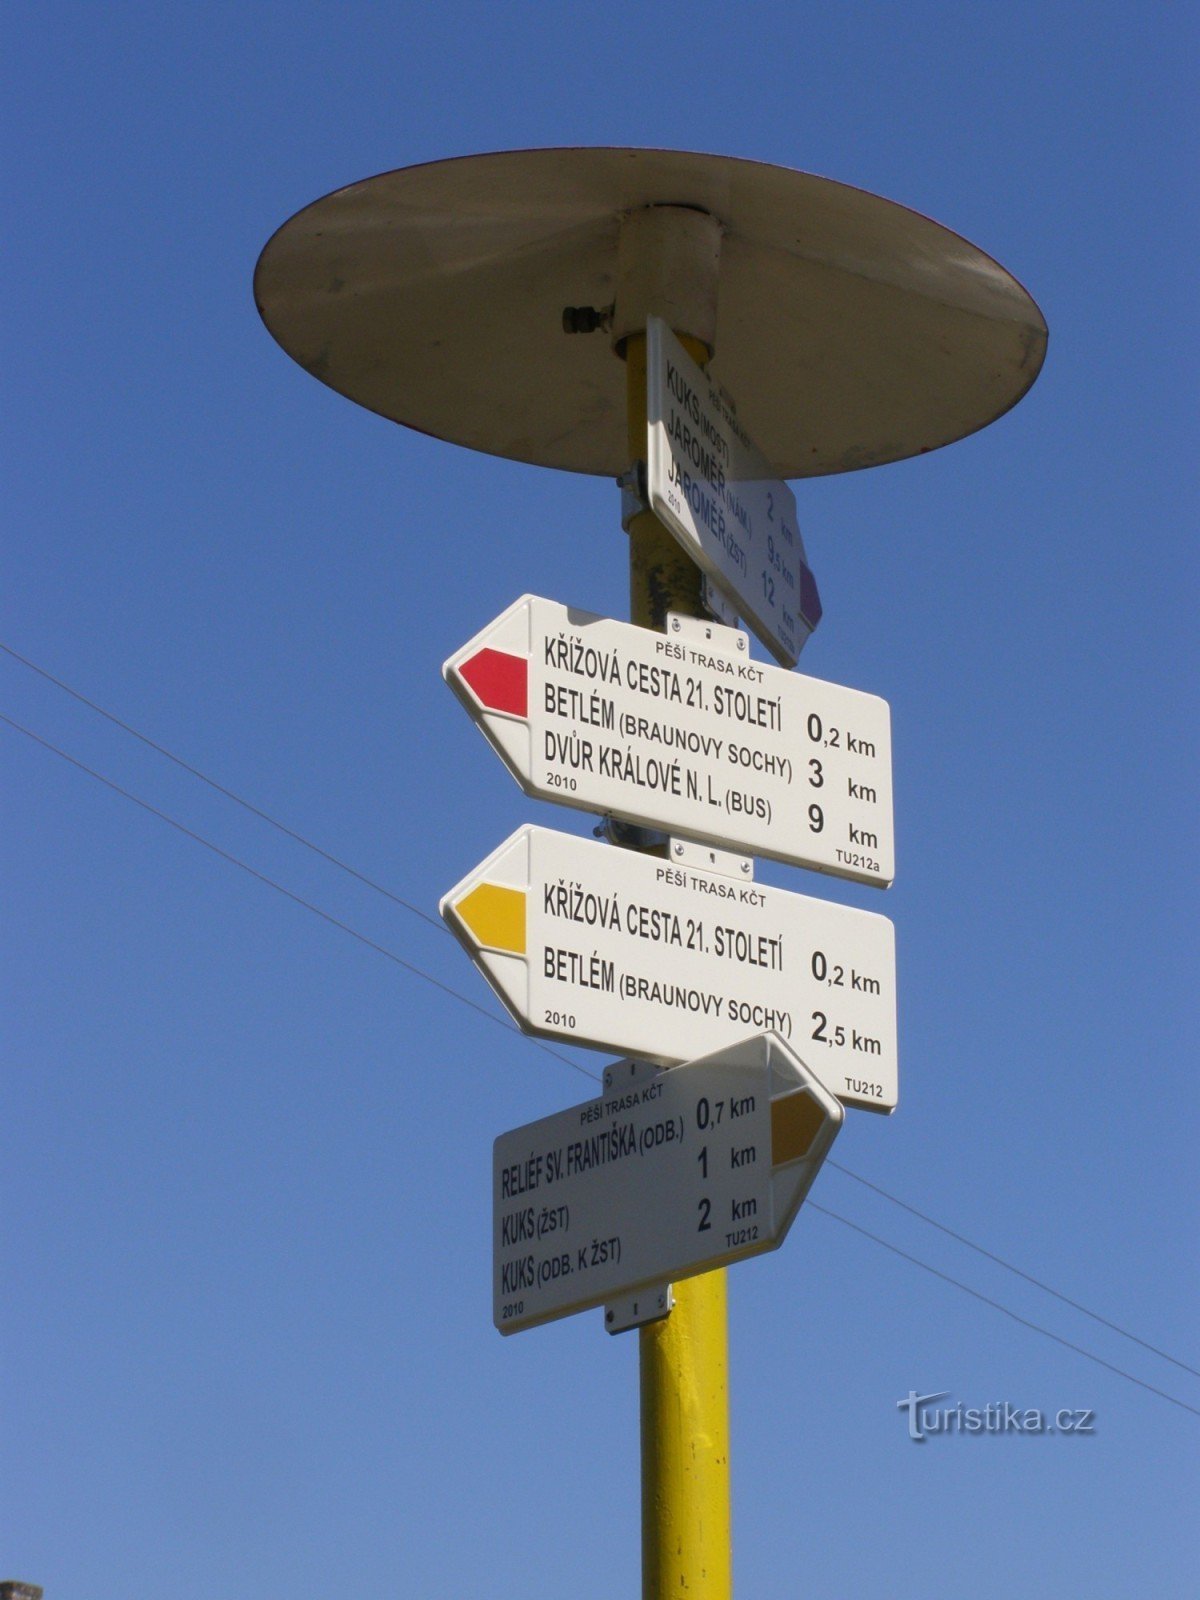 Ngã tư du lịch Stanovice - dưới Stations of the Cross thế kỷ 21